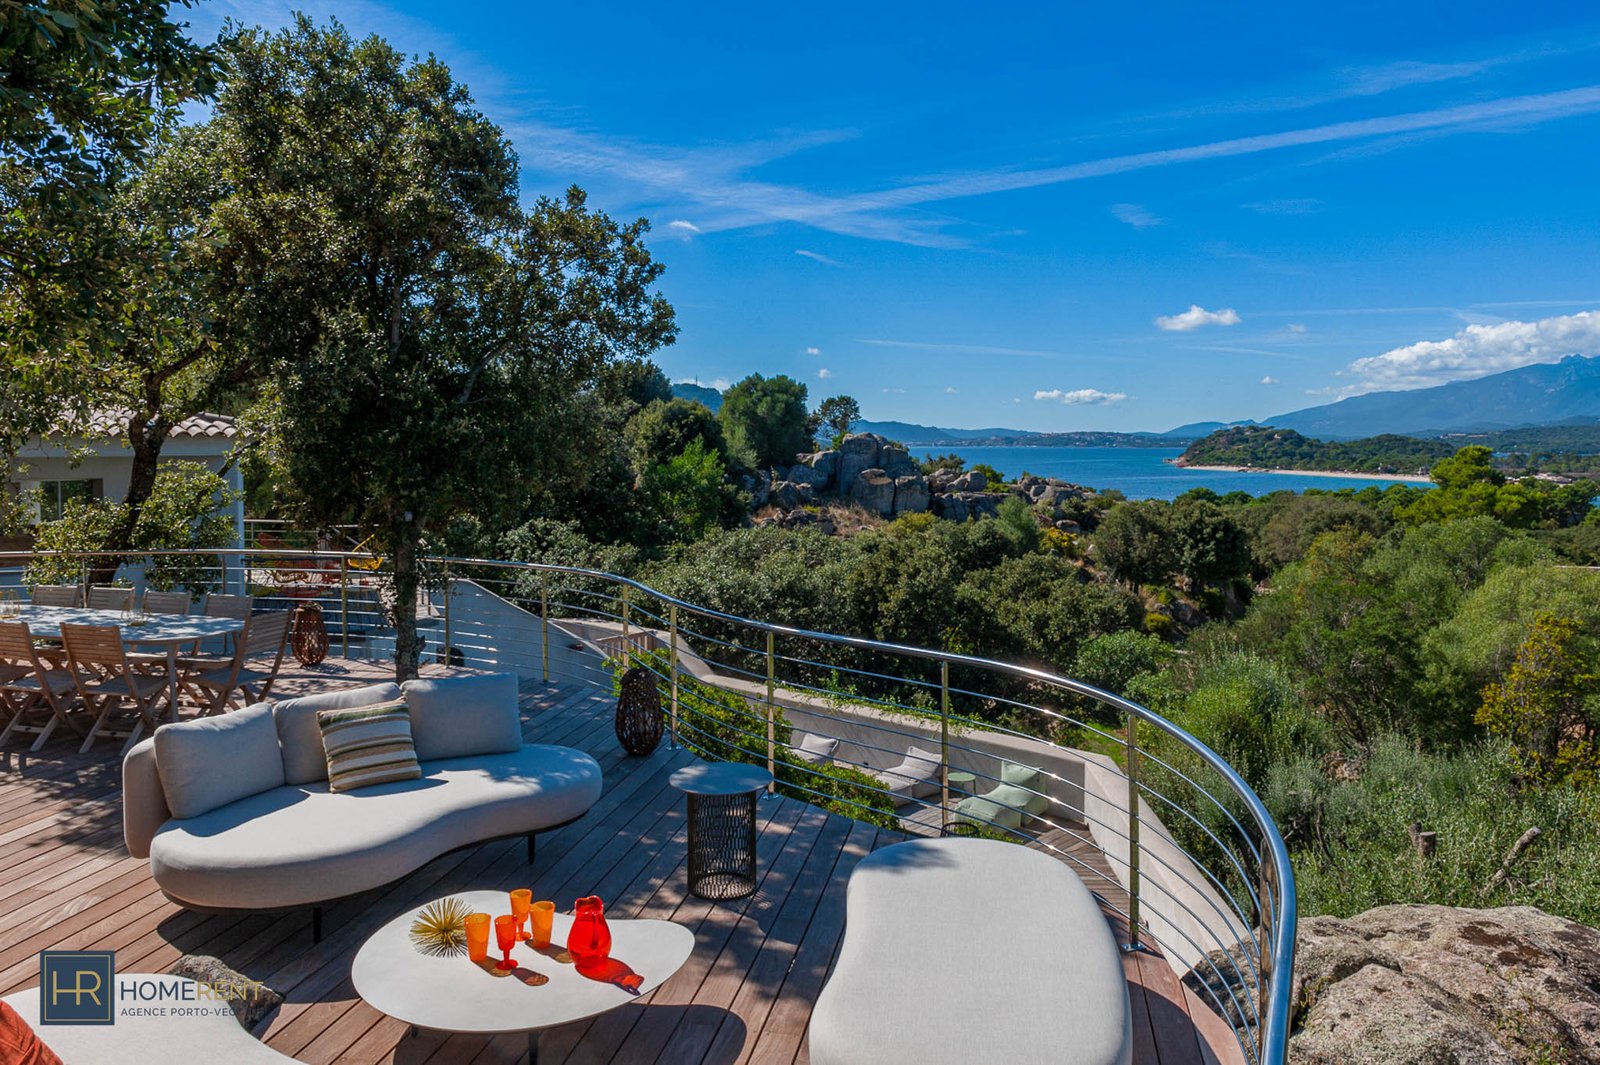 Location villa luxe Domaine privé de Cala Rossa 4 chambres vue mer piscine mobilier designer piscine moderne climatisée porche plage privées à pied grand jardin Porto Vecchio Corse du sud